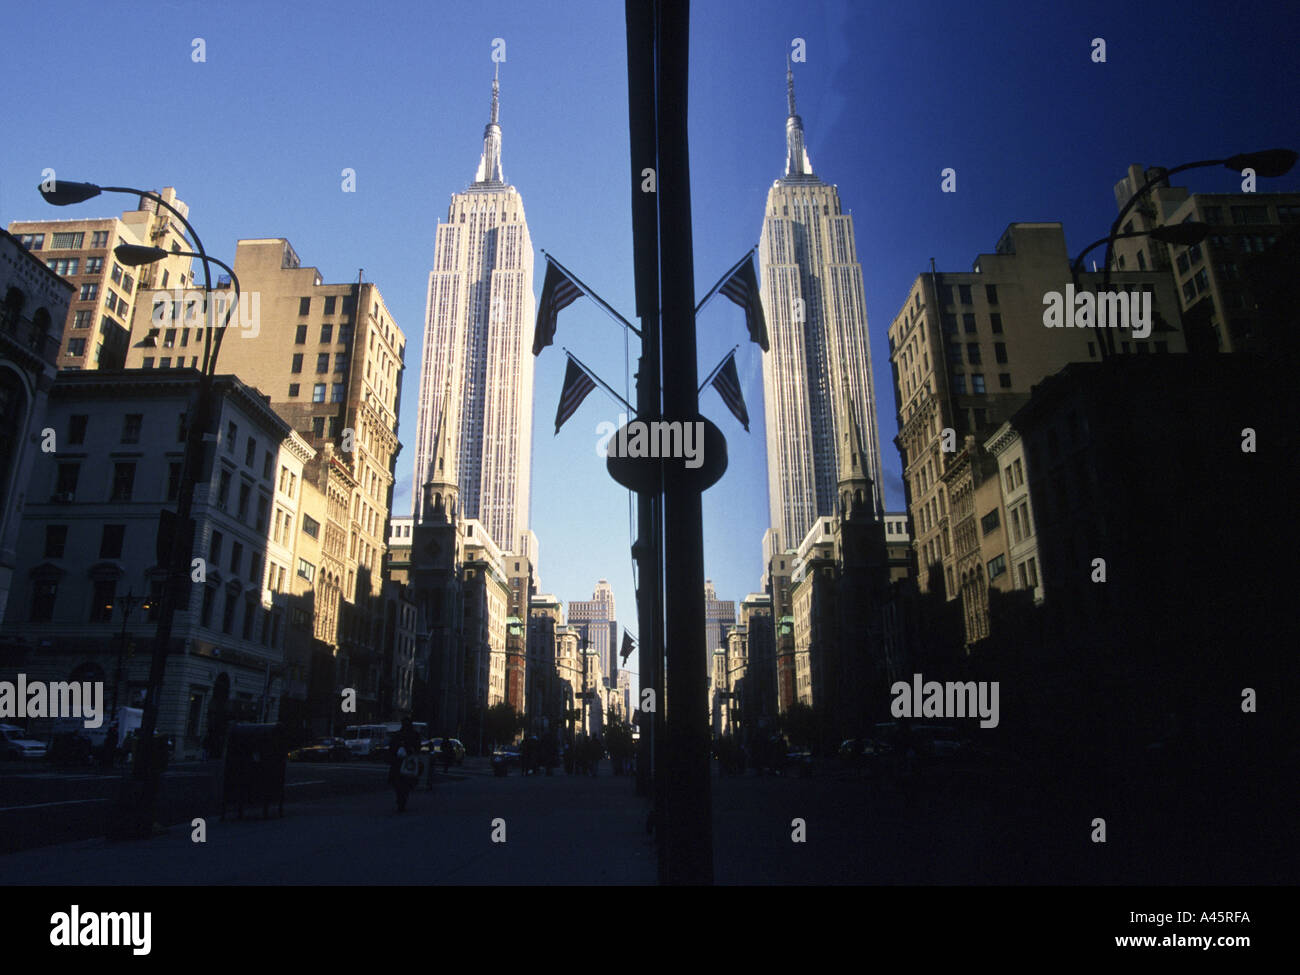 Lower Manhattan Skyline in 2000, Seen from the Manhattan ci…